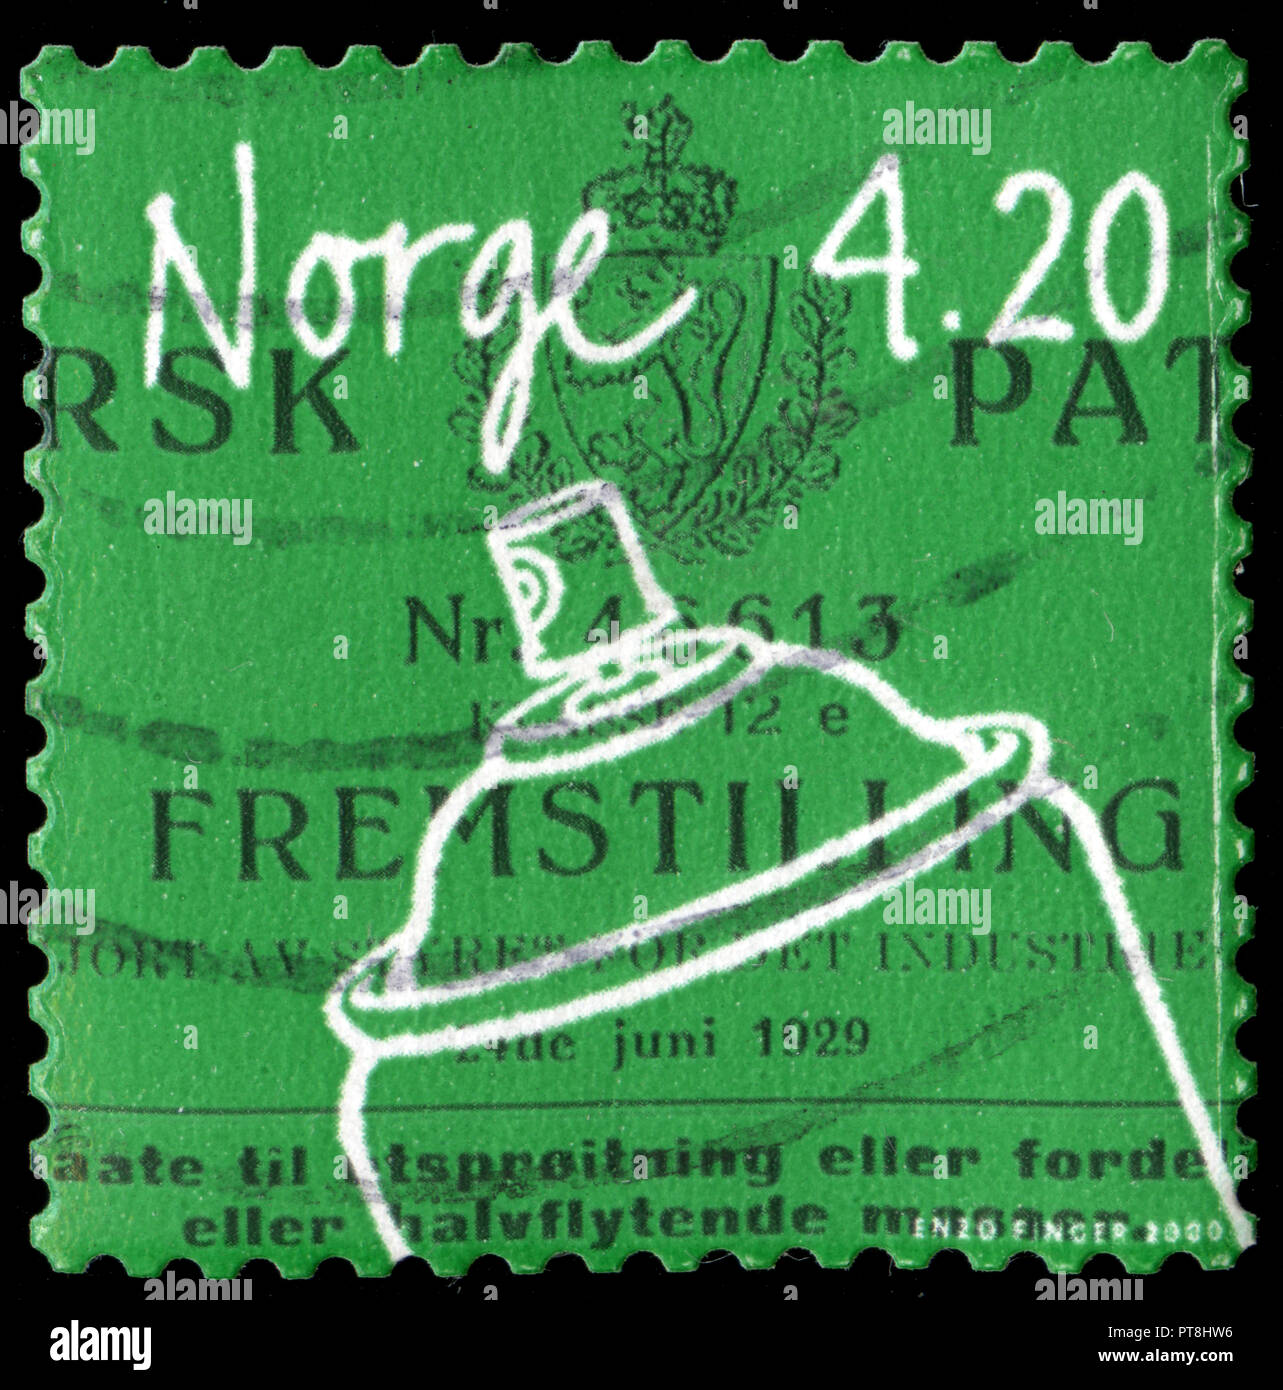 Sello postal de Noruega en la serie inventos de Noruega publicado en 1999 Foto de stock